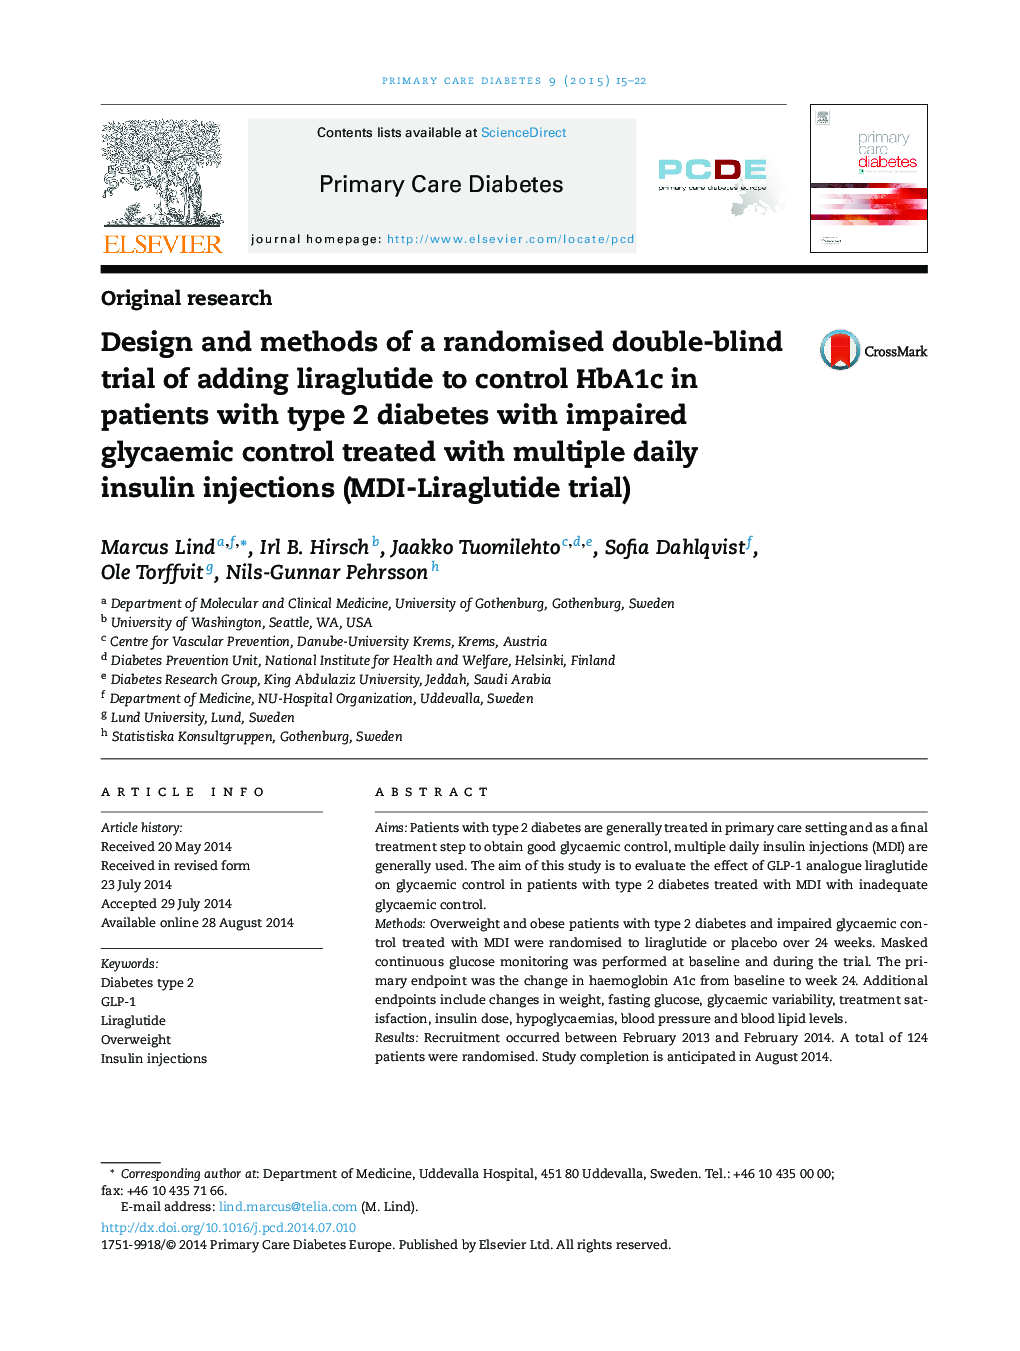 طراحی و روش کارآزمايی بالينی تصادفی دو سو کور با افزودن ليراگلوتیيد به کنترل HbA1c در بيماران مبتلا به ديابت نوع 2 همراه با نقص کنترل گليسمی با تزريق روزانه انسولين چندگانه (آزمايش MDI-Liraglutide)